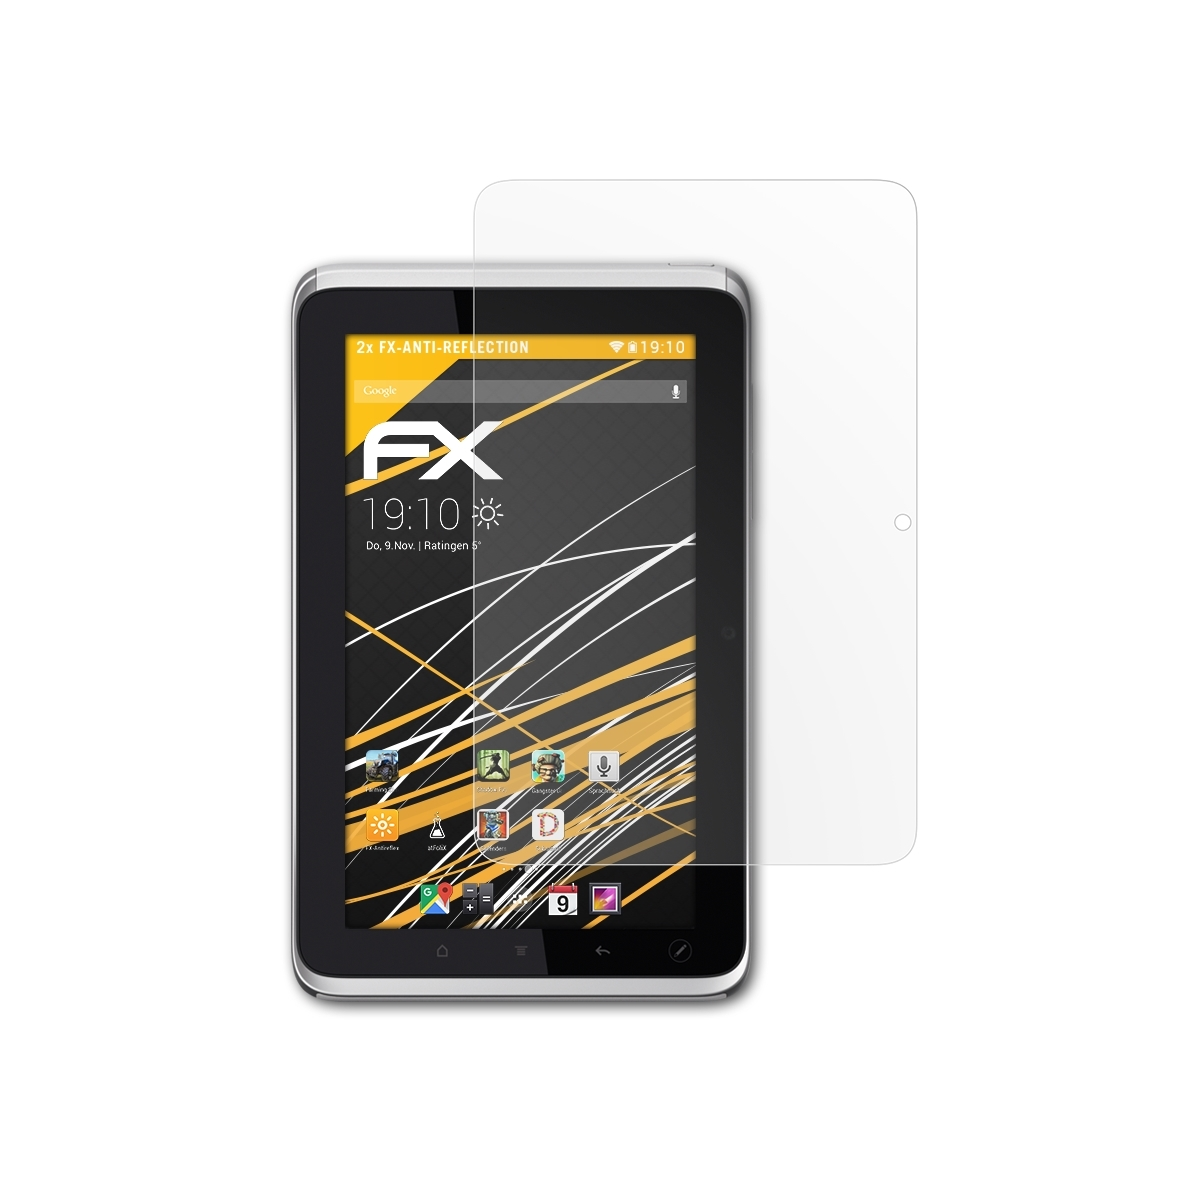 FX-Antireflex Flyer 2x HTC Tablet) ATFOLIX Displayschutz(für